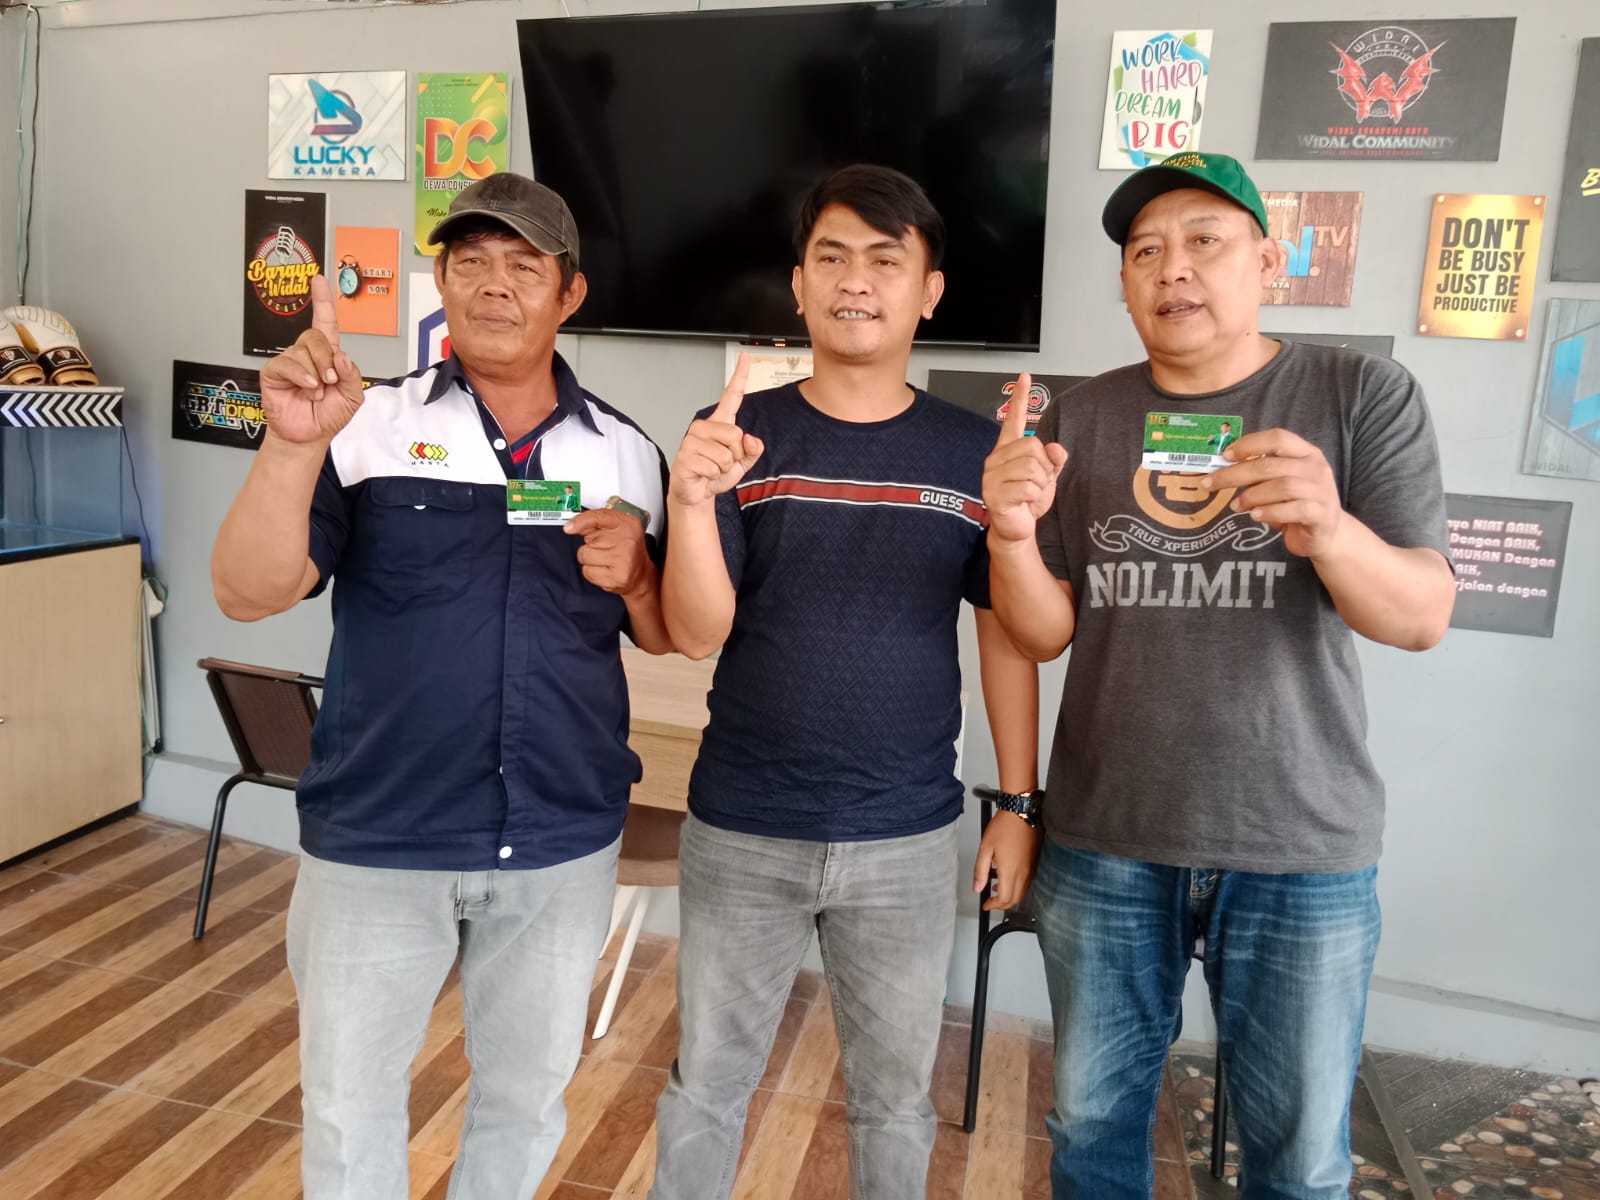 Calon anggota legislatif (Caleg) dari PPP untuk Dapil 3 Kota Sukabumi, Fajar Kontara bersama konstituennya memperlihatkan kartu mudah.